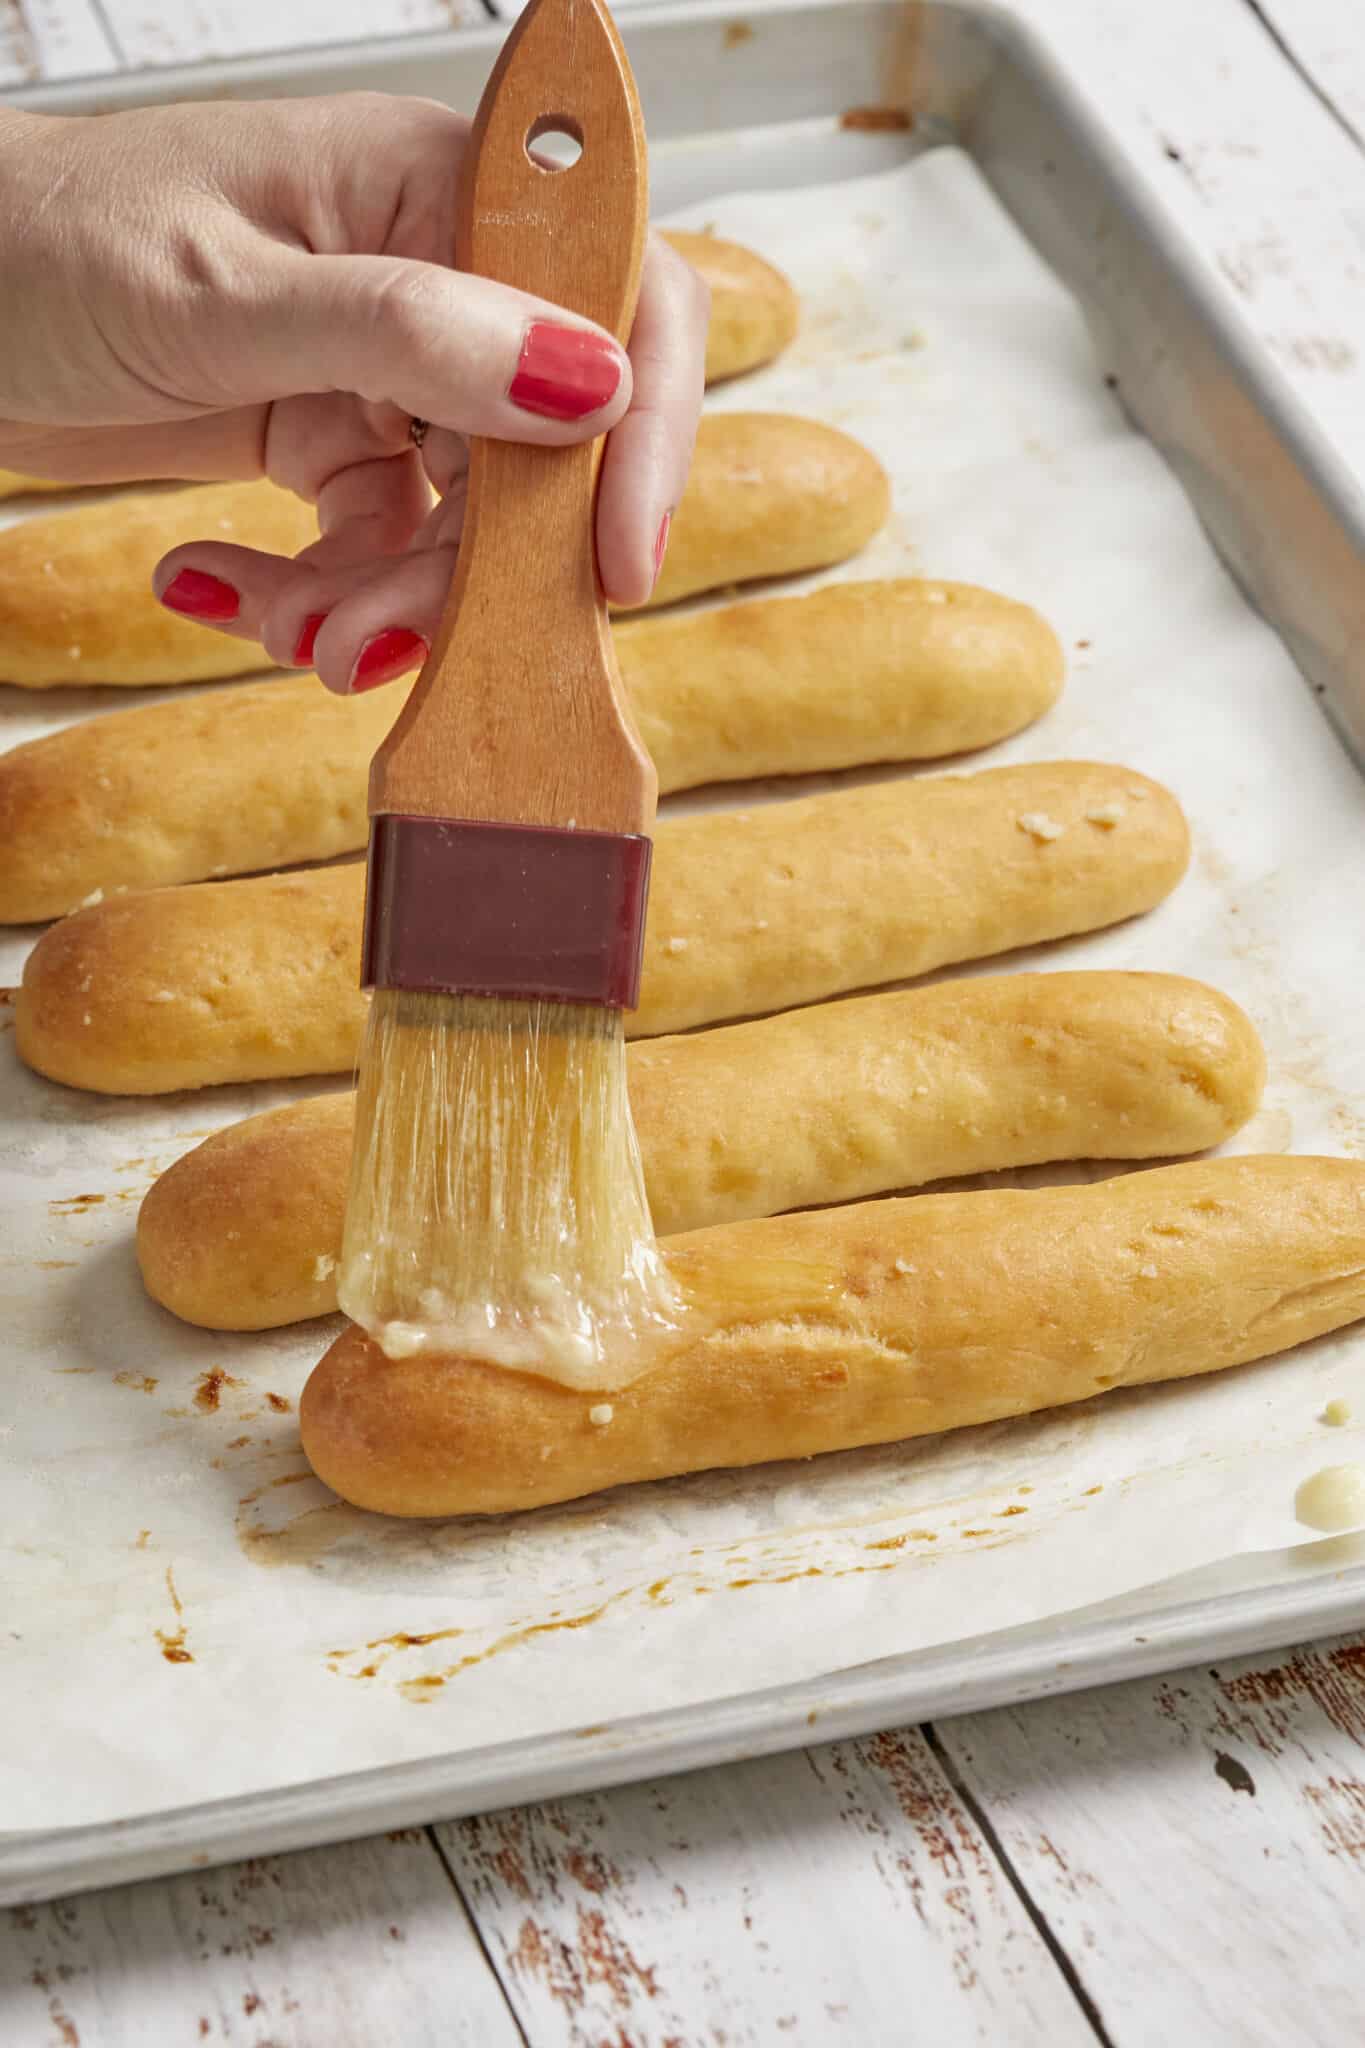 Brush garlic butter onto baked golden breadsticks on a baking tray. 